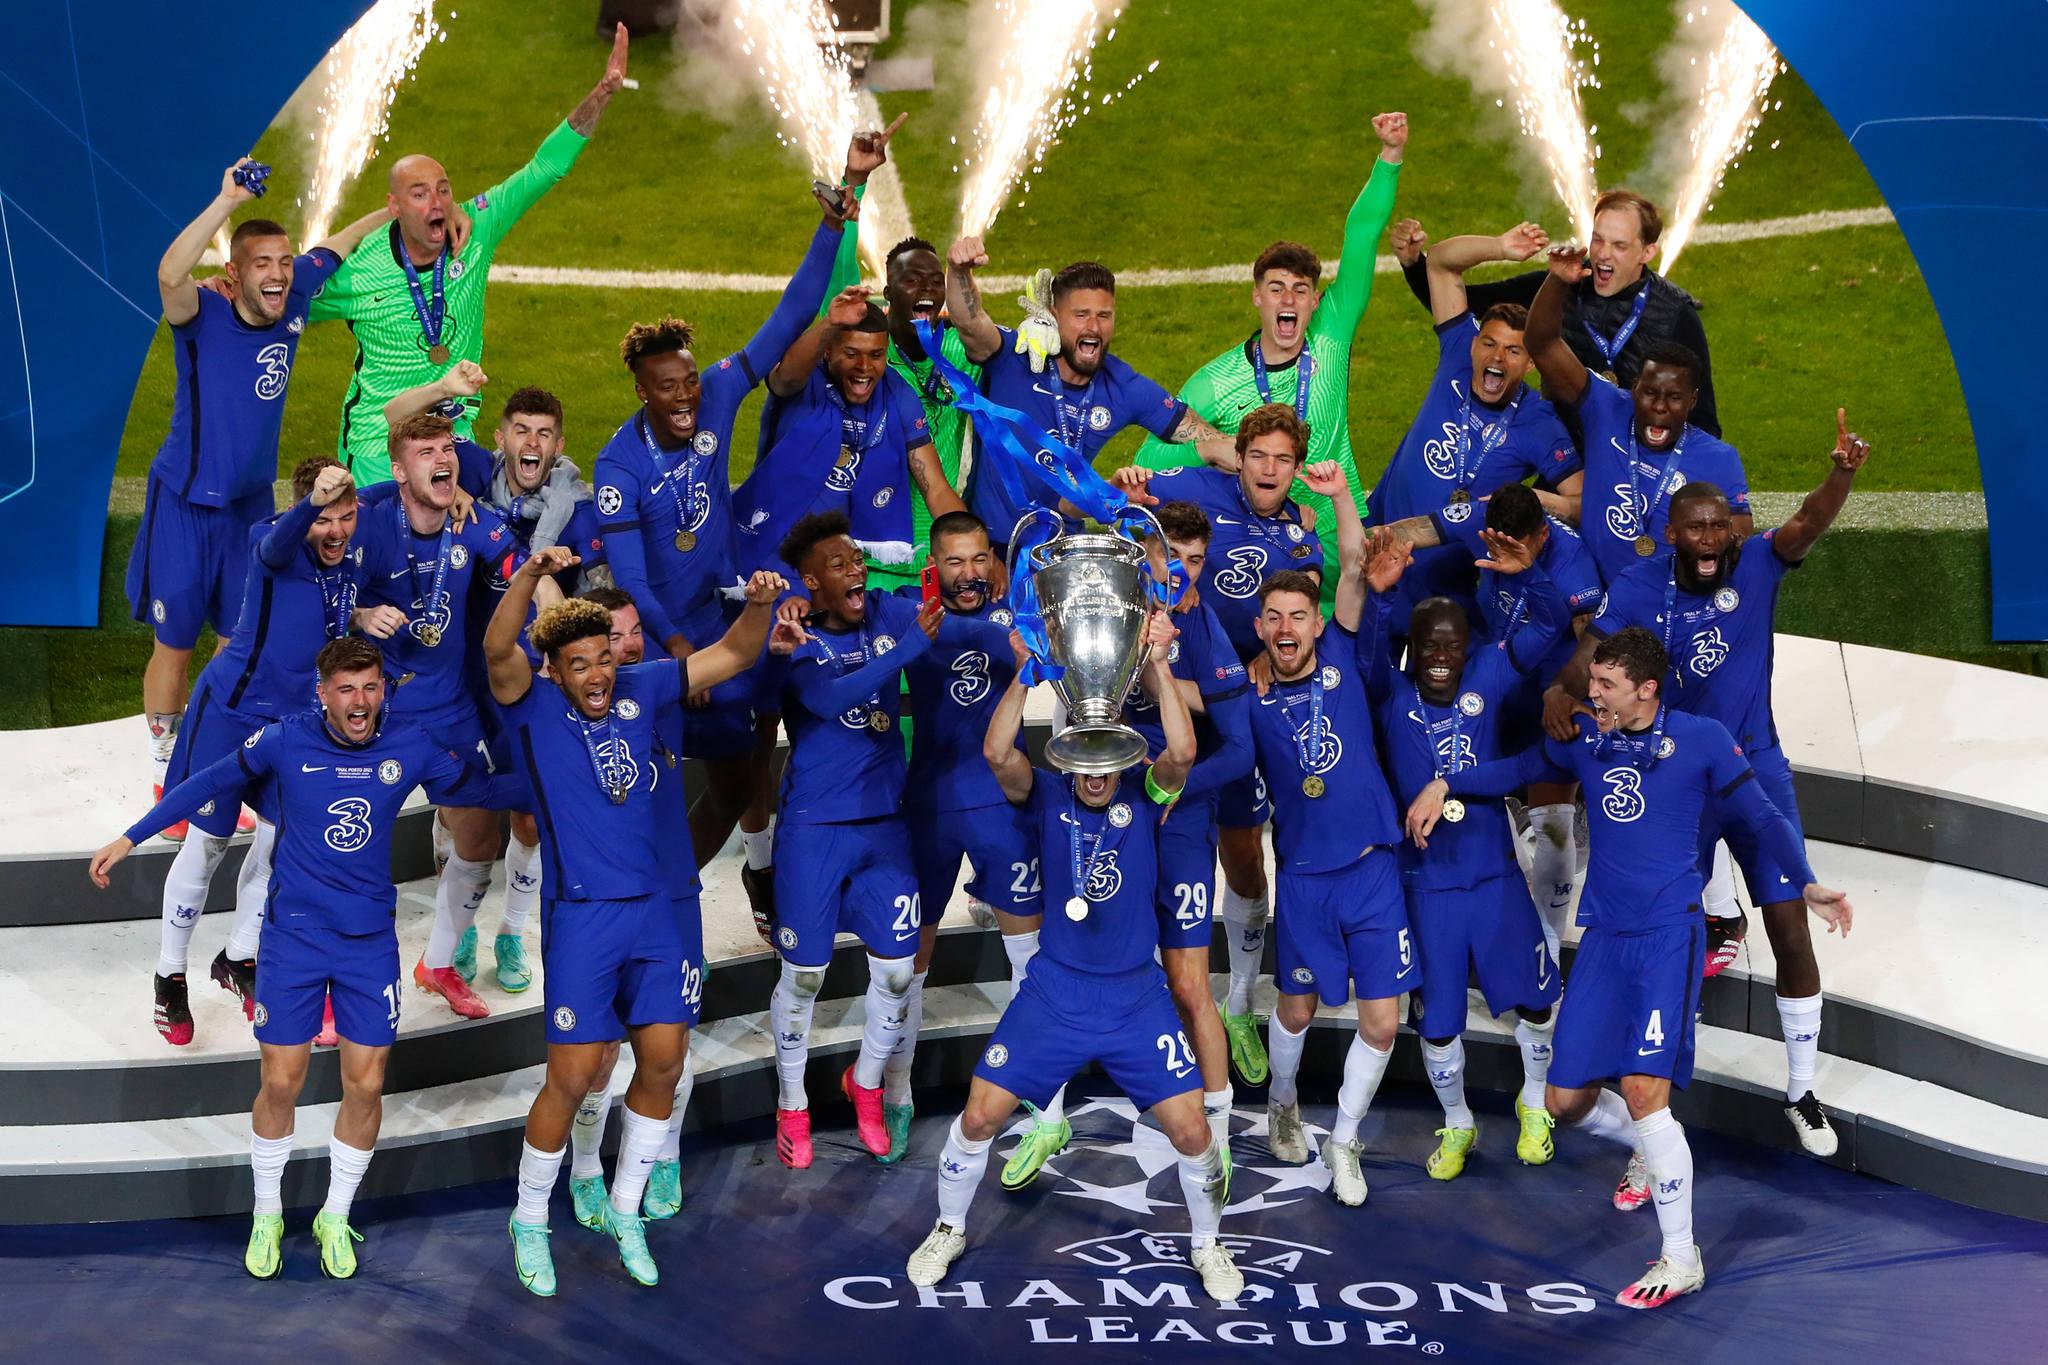 Rotas da Bola analisa o Chelsea e as outras decepções da temporada europeia